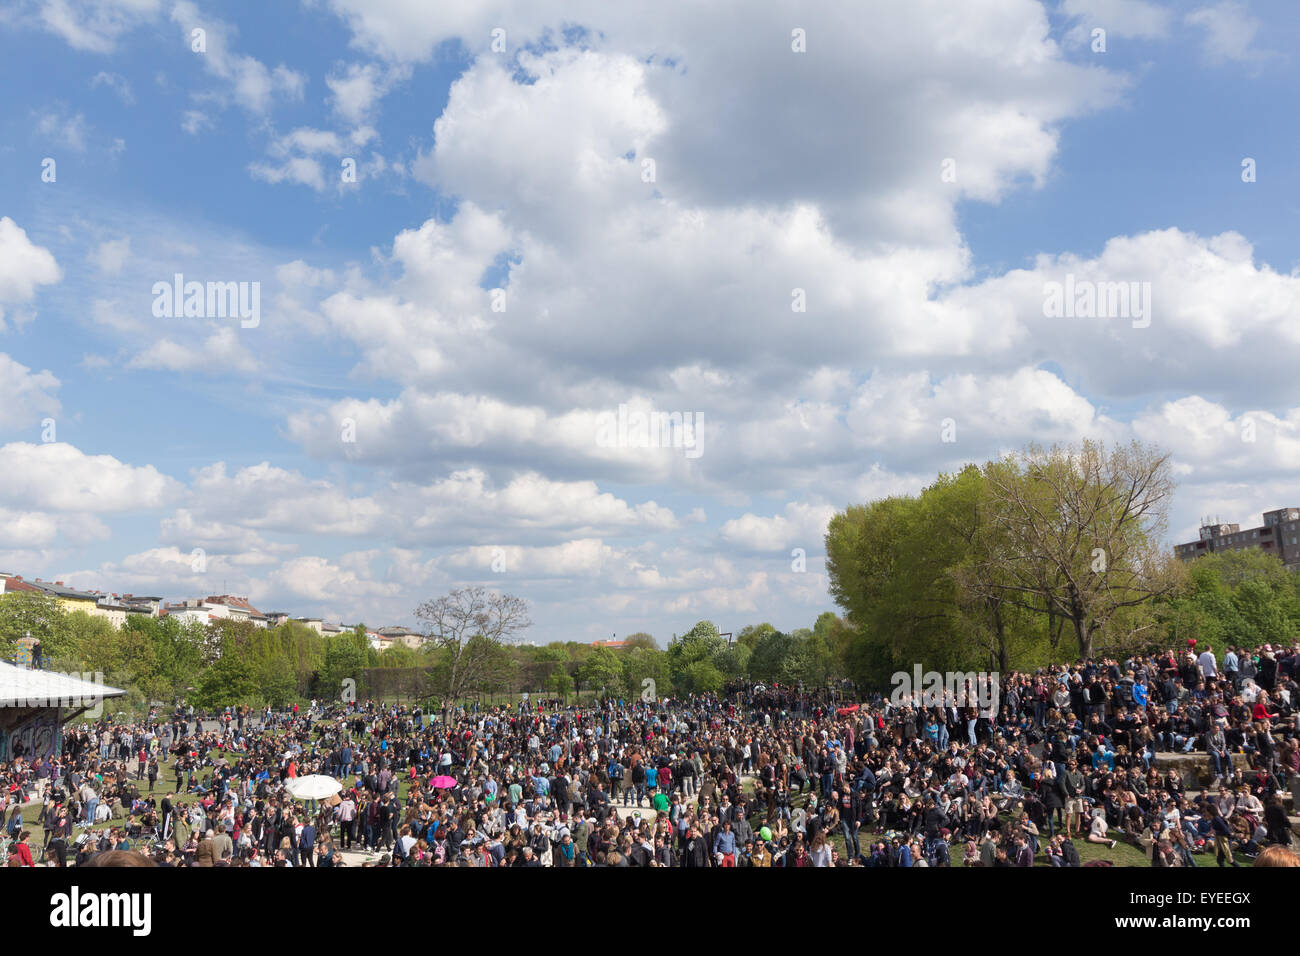 Les gens de goerlitzer park le 01 mai 2015, Kreuzberg, Berlin Banque D'Images